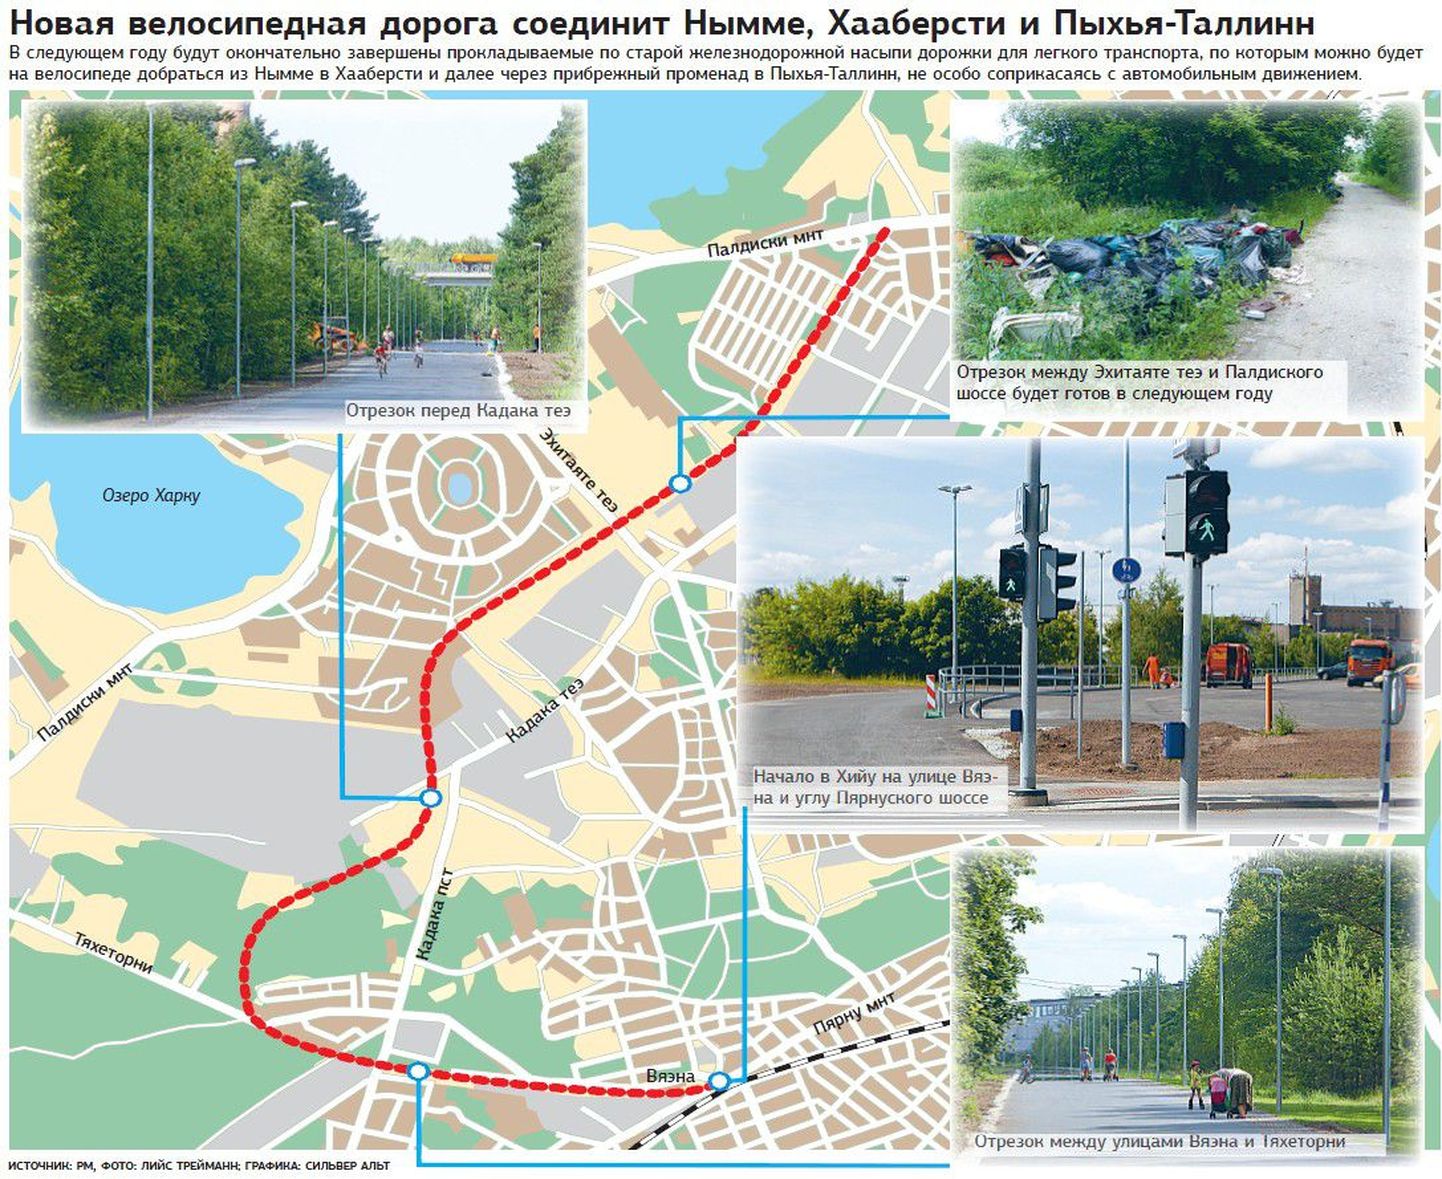 Новая велосипедная дорога соединит Нымме, Хааберсти и Пыхья-Таллинн.